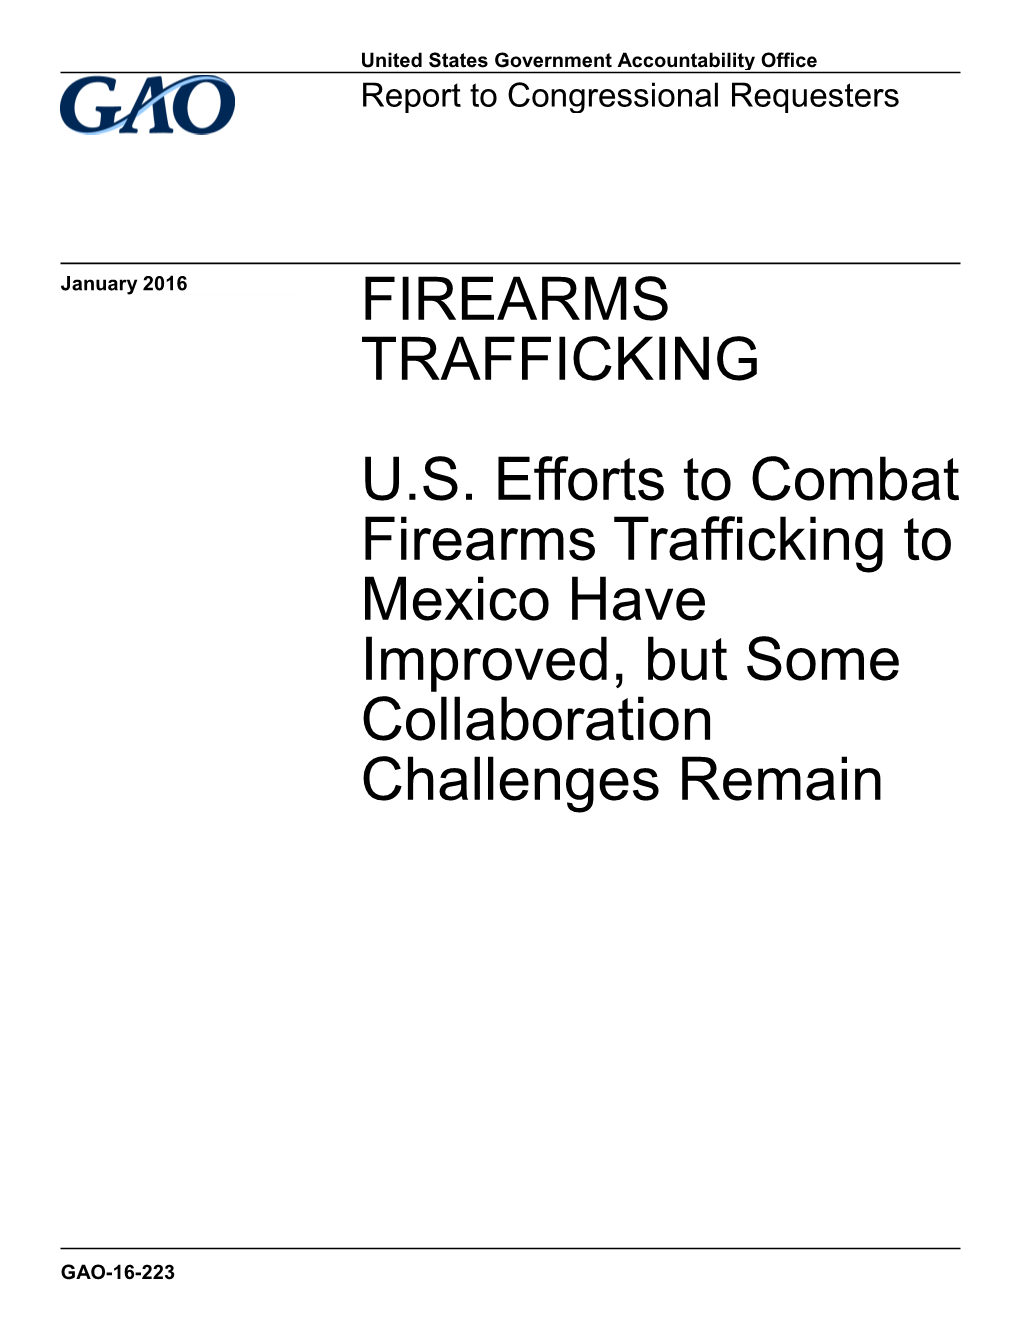 Firearms Trafficking U.S